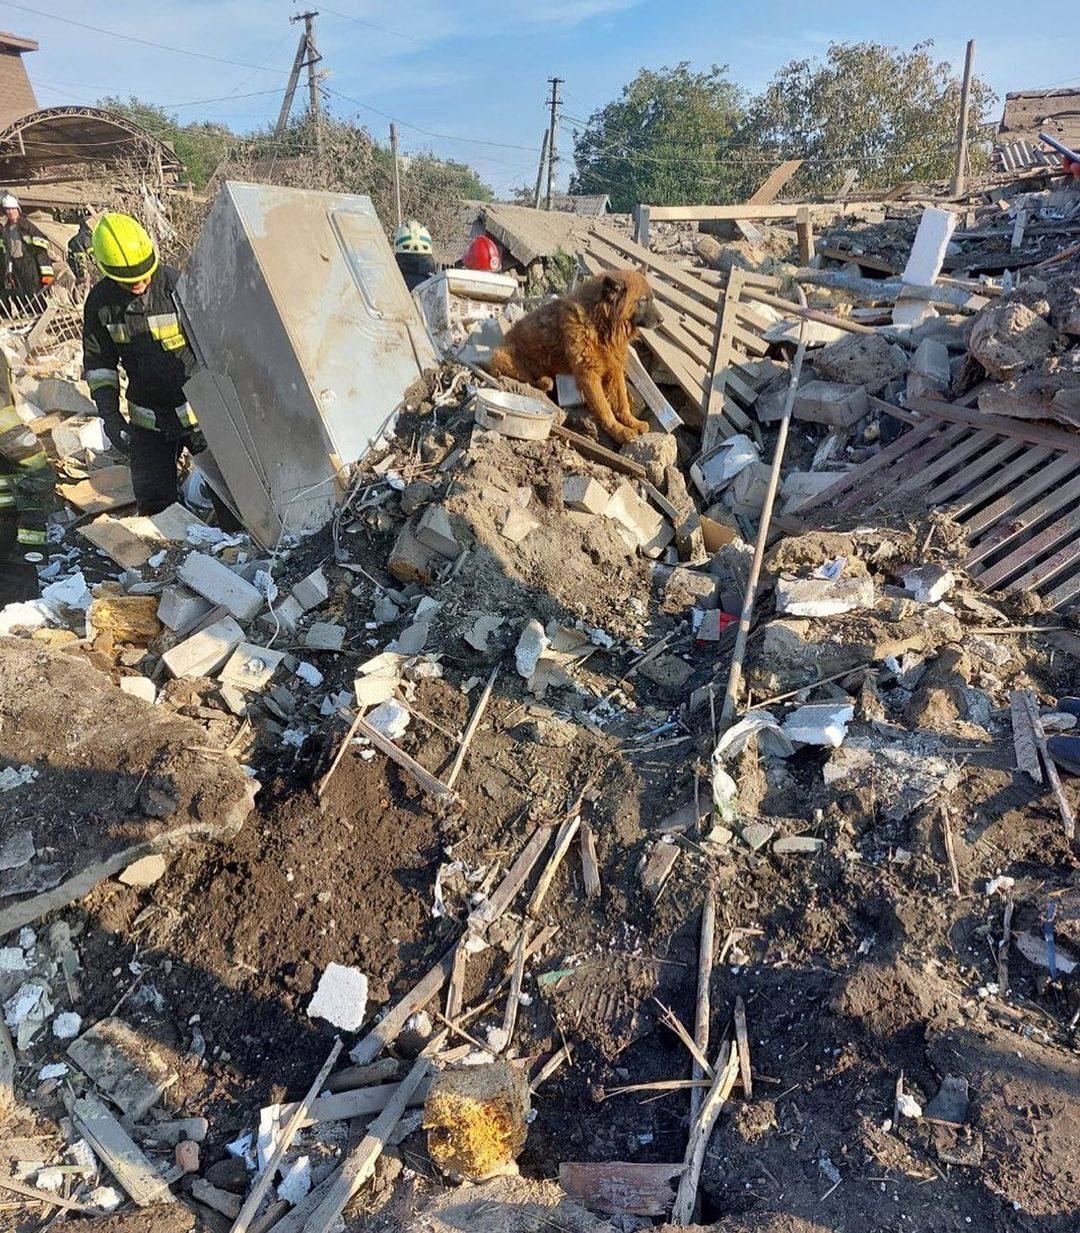 На руинах дома сидел и плакал пес: появились кадры с места гибели от российской ракеты семьи из Днепра. Фото и видео